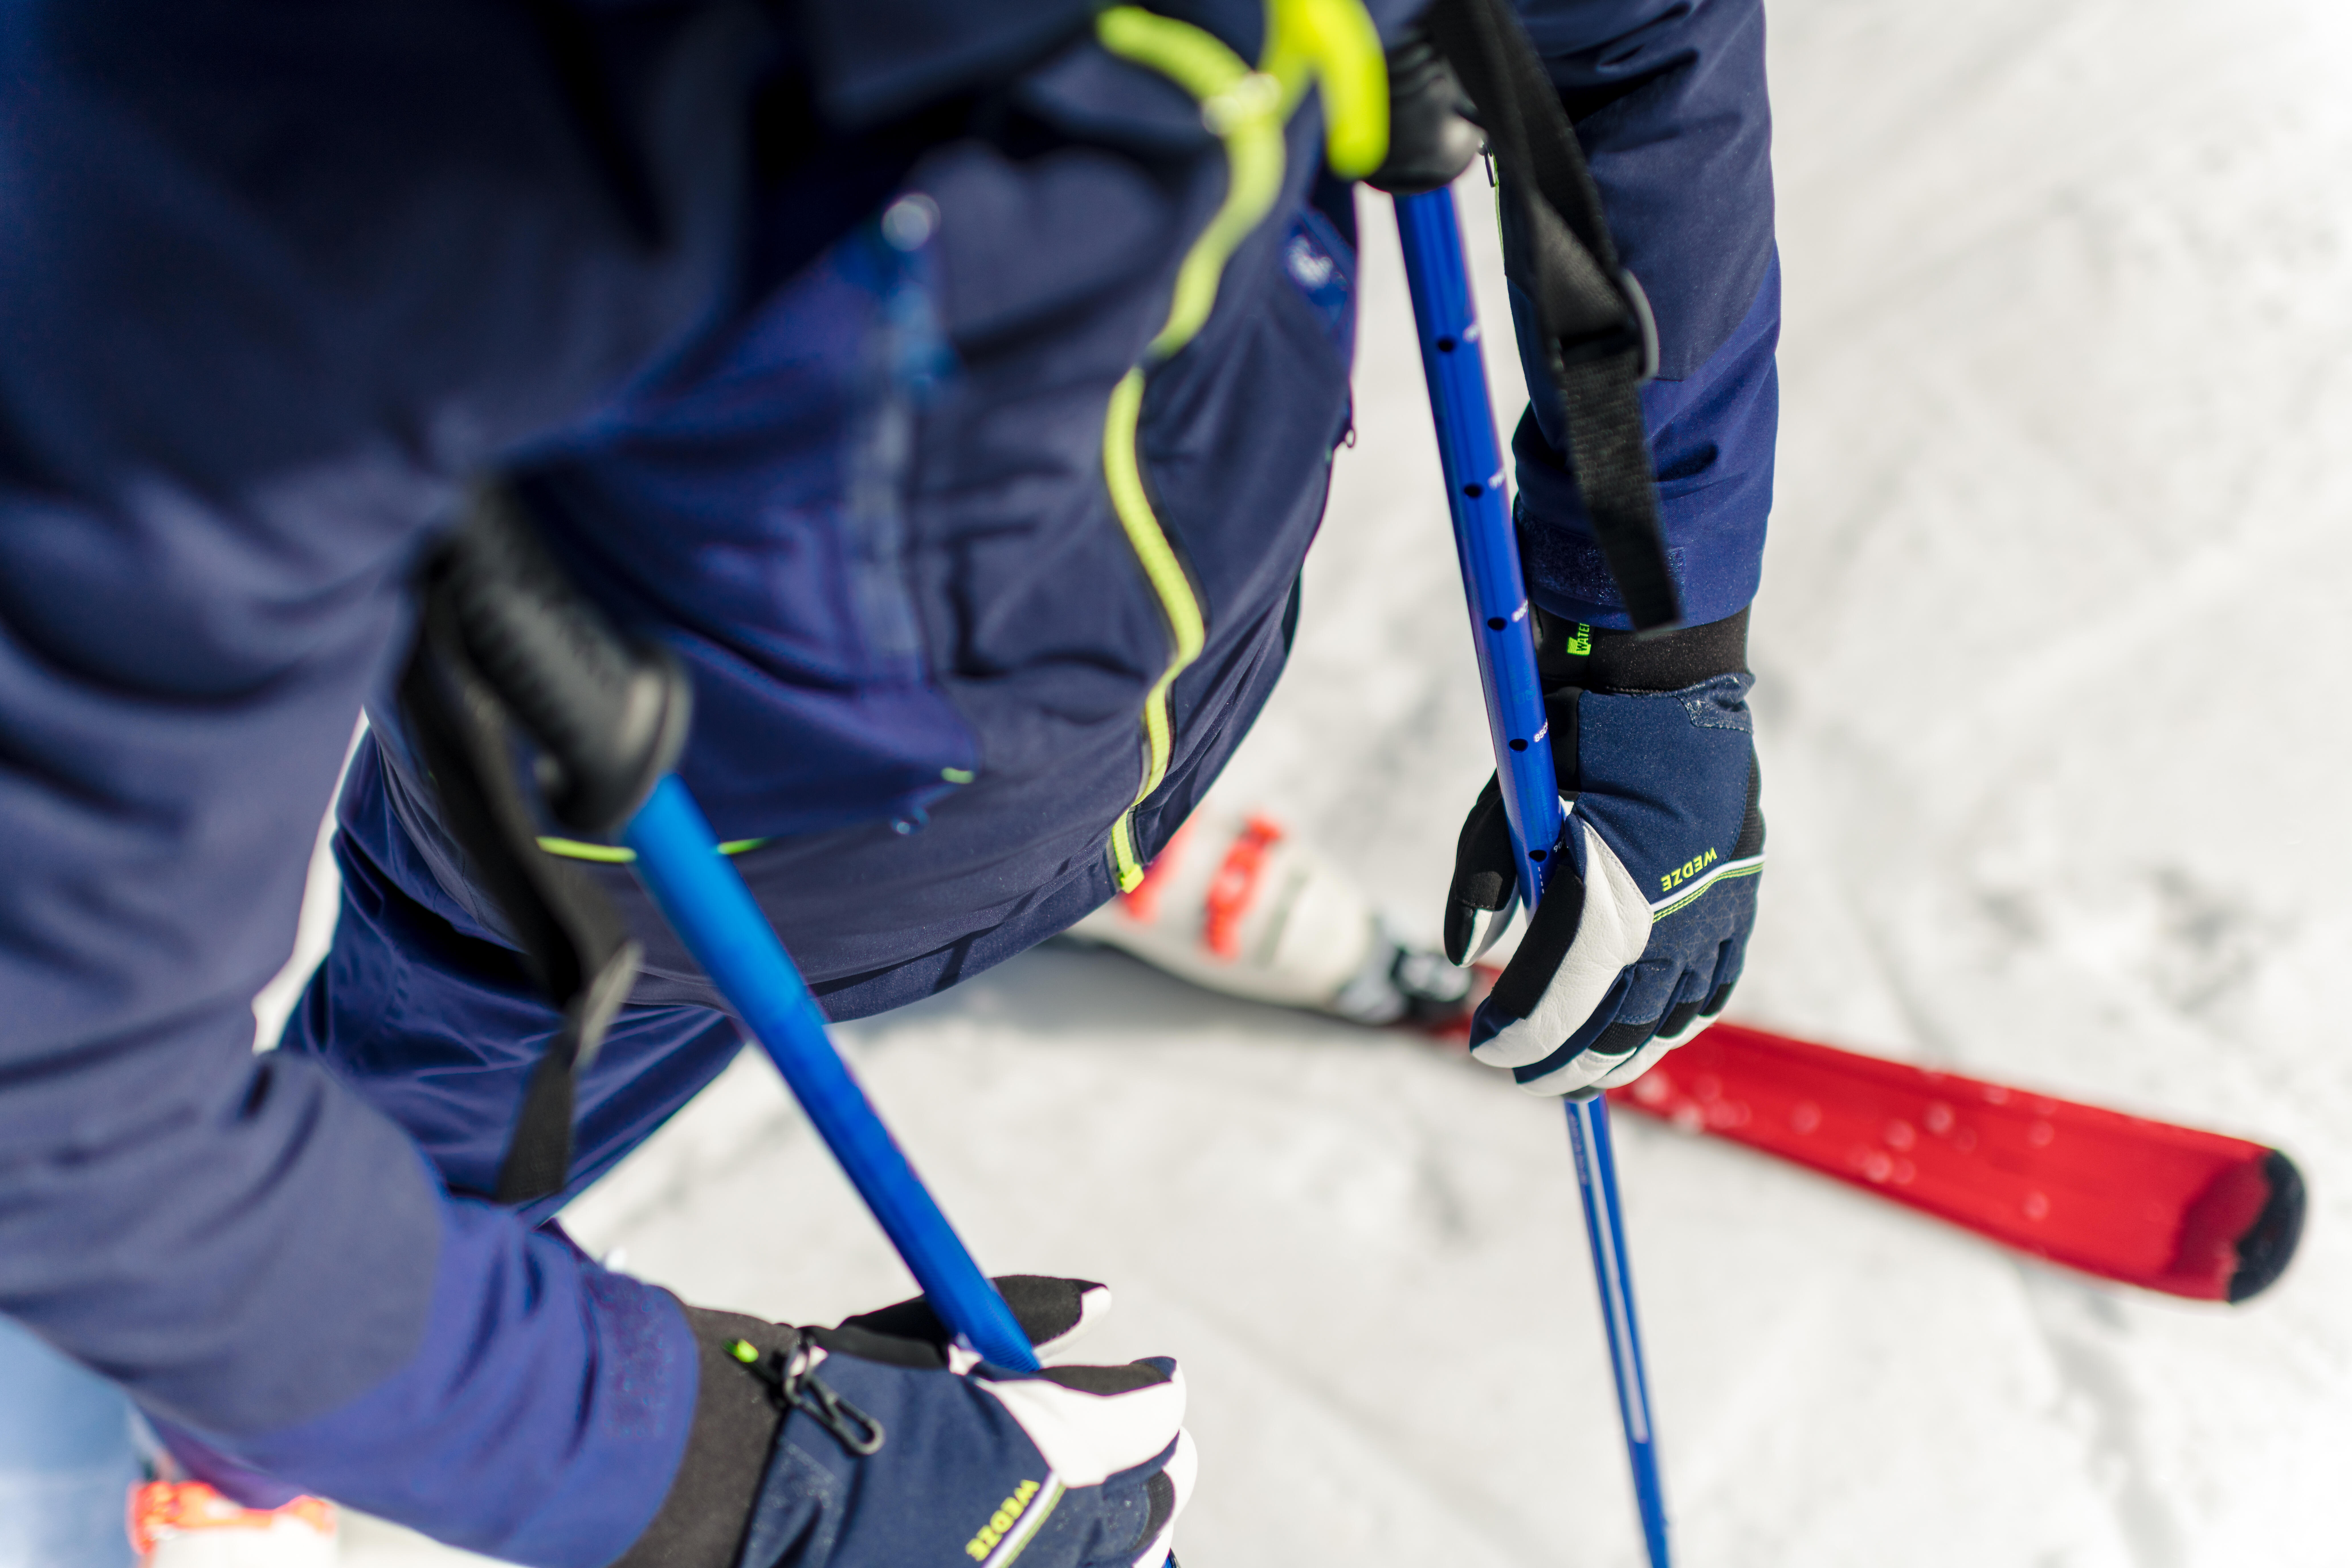 Kids' Warm Ski Jacket - Ski 900 Blue - WEDZE